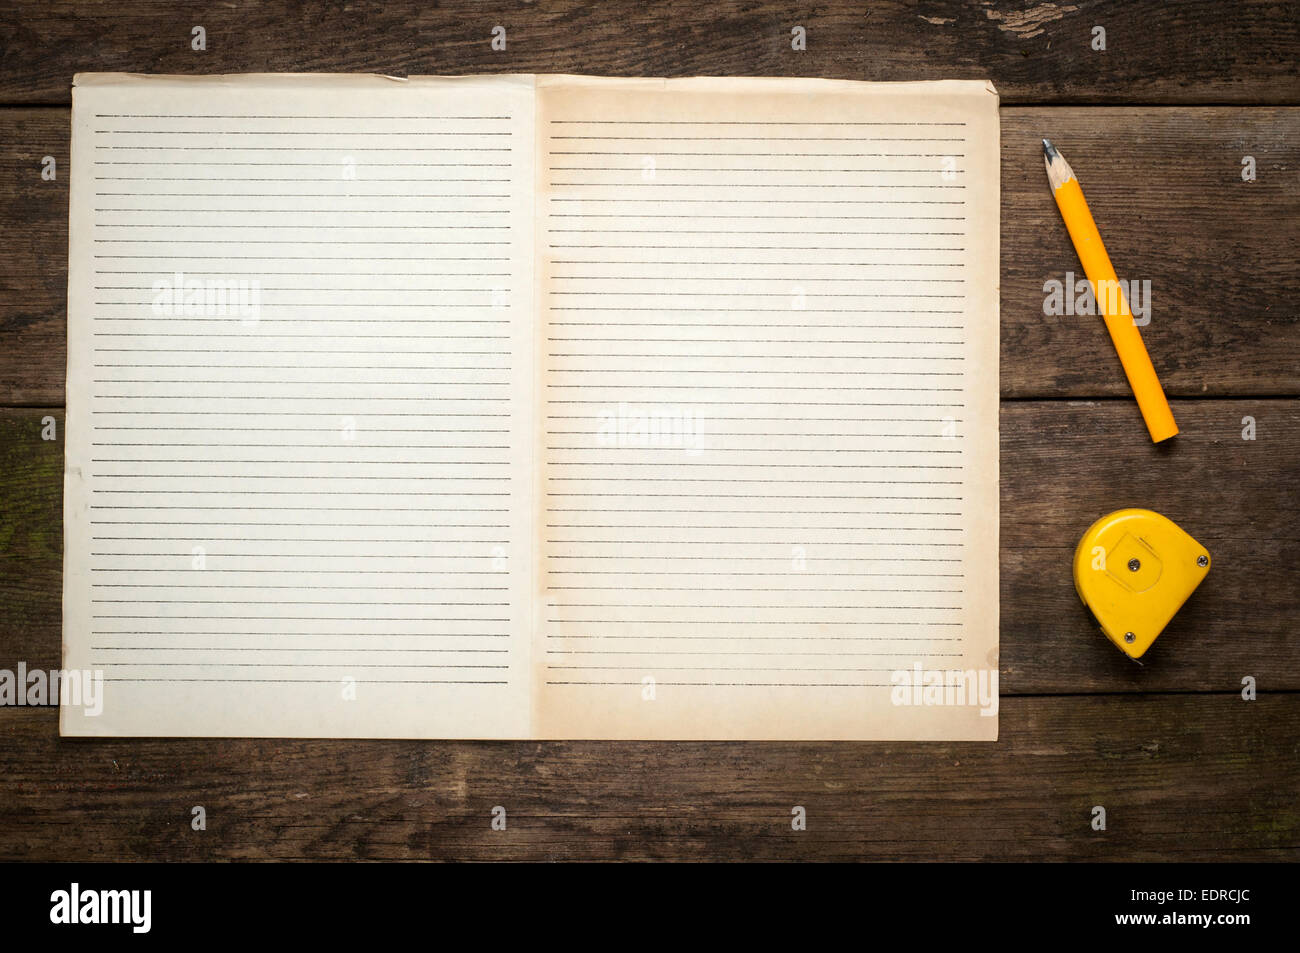 Vide Remarque page de livre avec un crayon de bois sur table 24 arrière-plan, style rustique, Concept et idée pour écrire votre texte . Banque D'Images